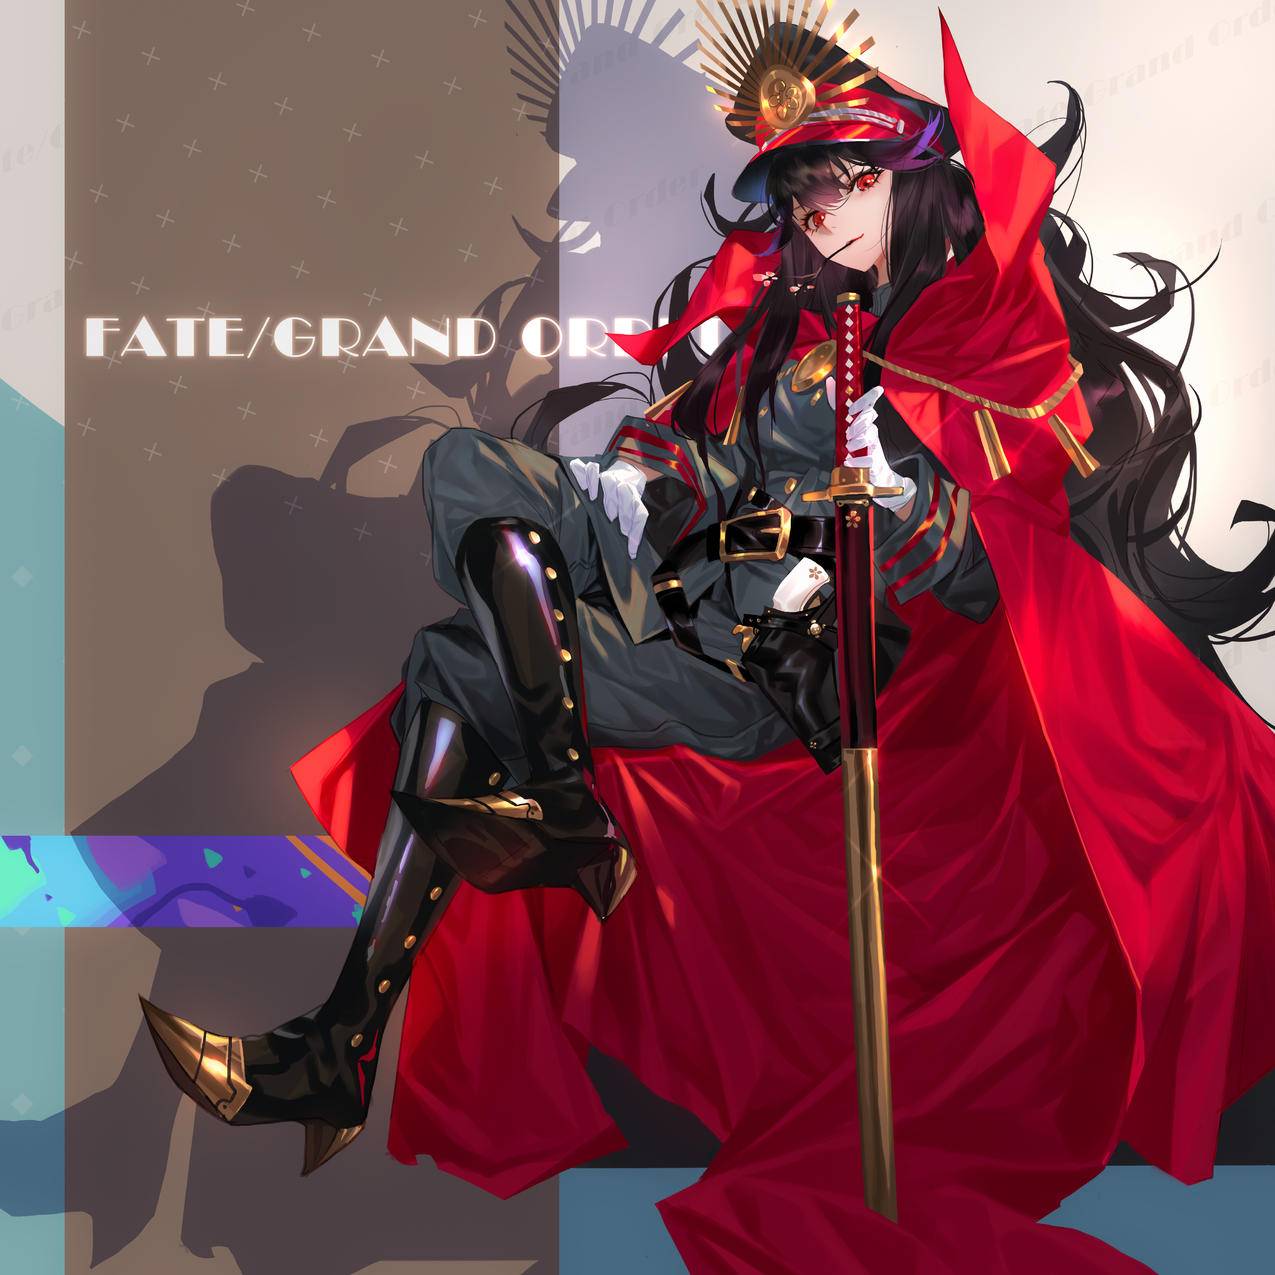 《Fate》军服,长剑,披风,帽子,帅气女孩,4K高清动漫壁纸